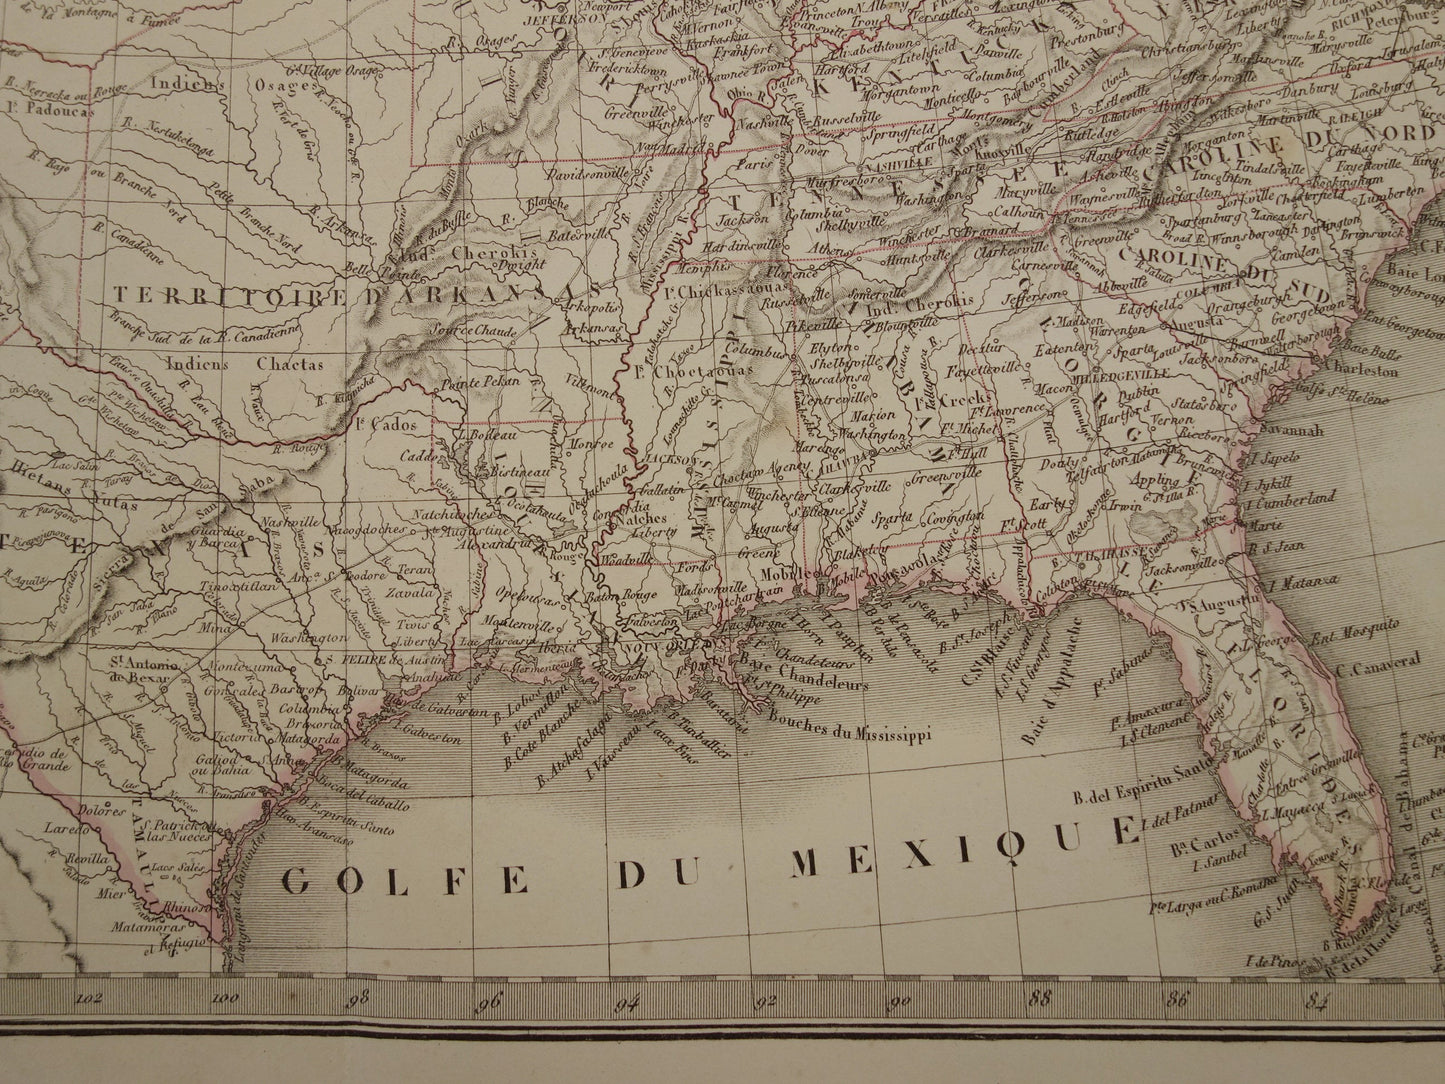 Verenigde Staten van Amerika antieke landkaart uit 1851 - Originele oude Franse kaart van de VS